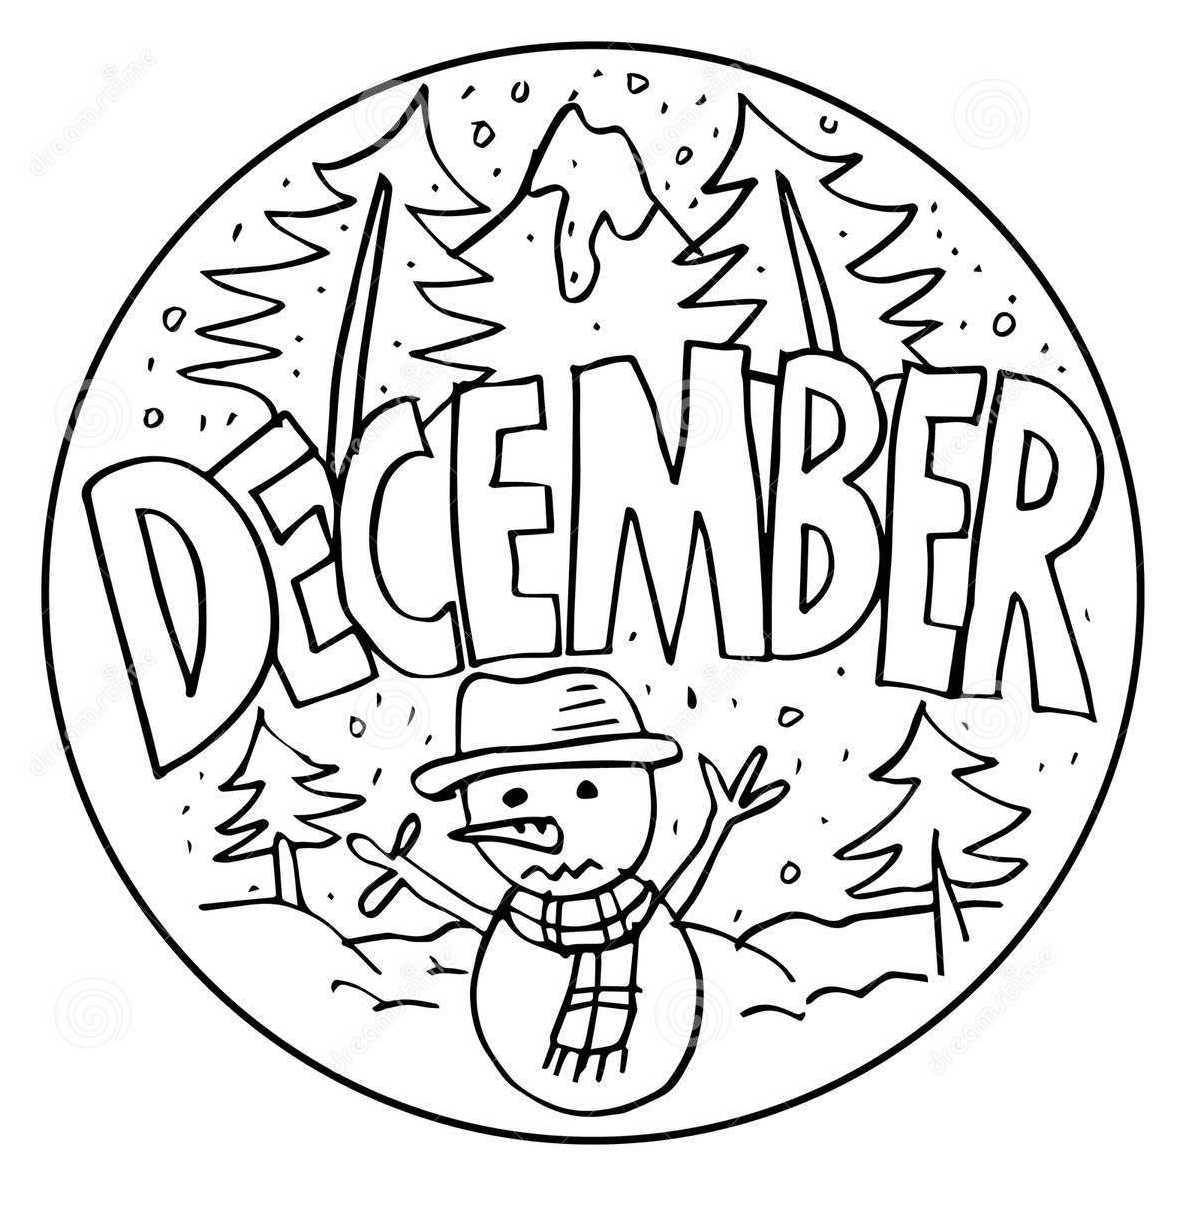 December met sneeuwpop kleurplaat